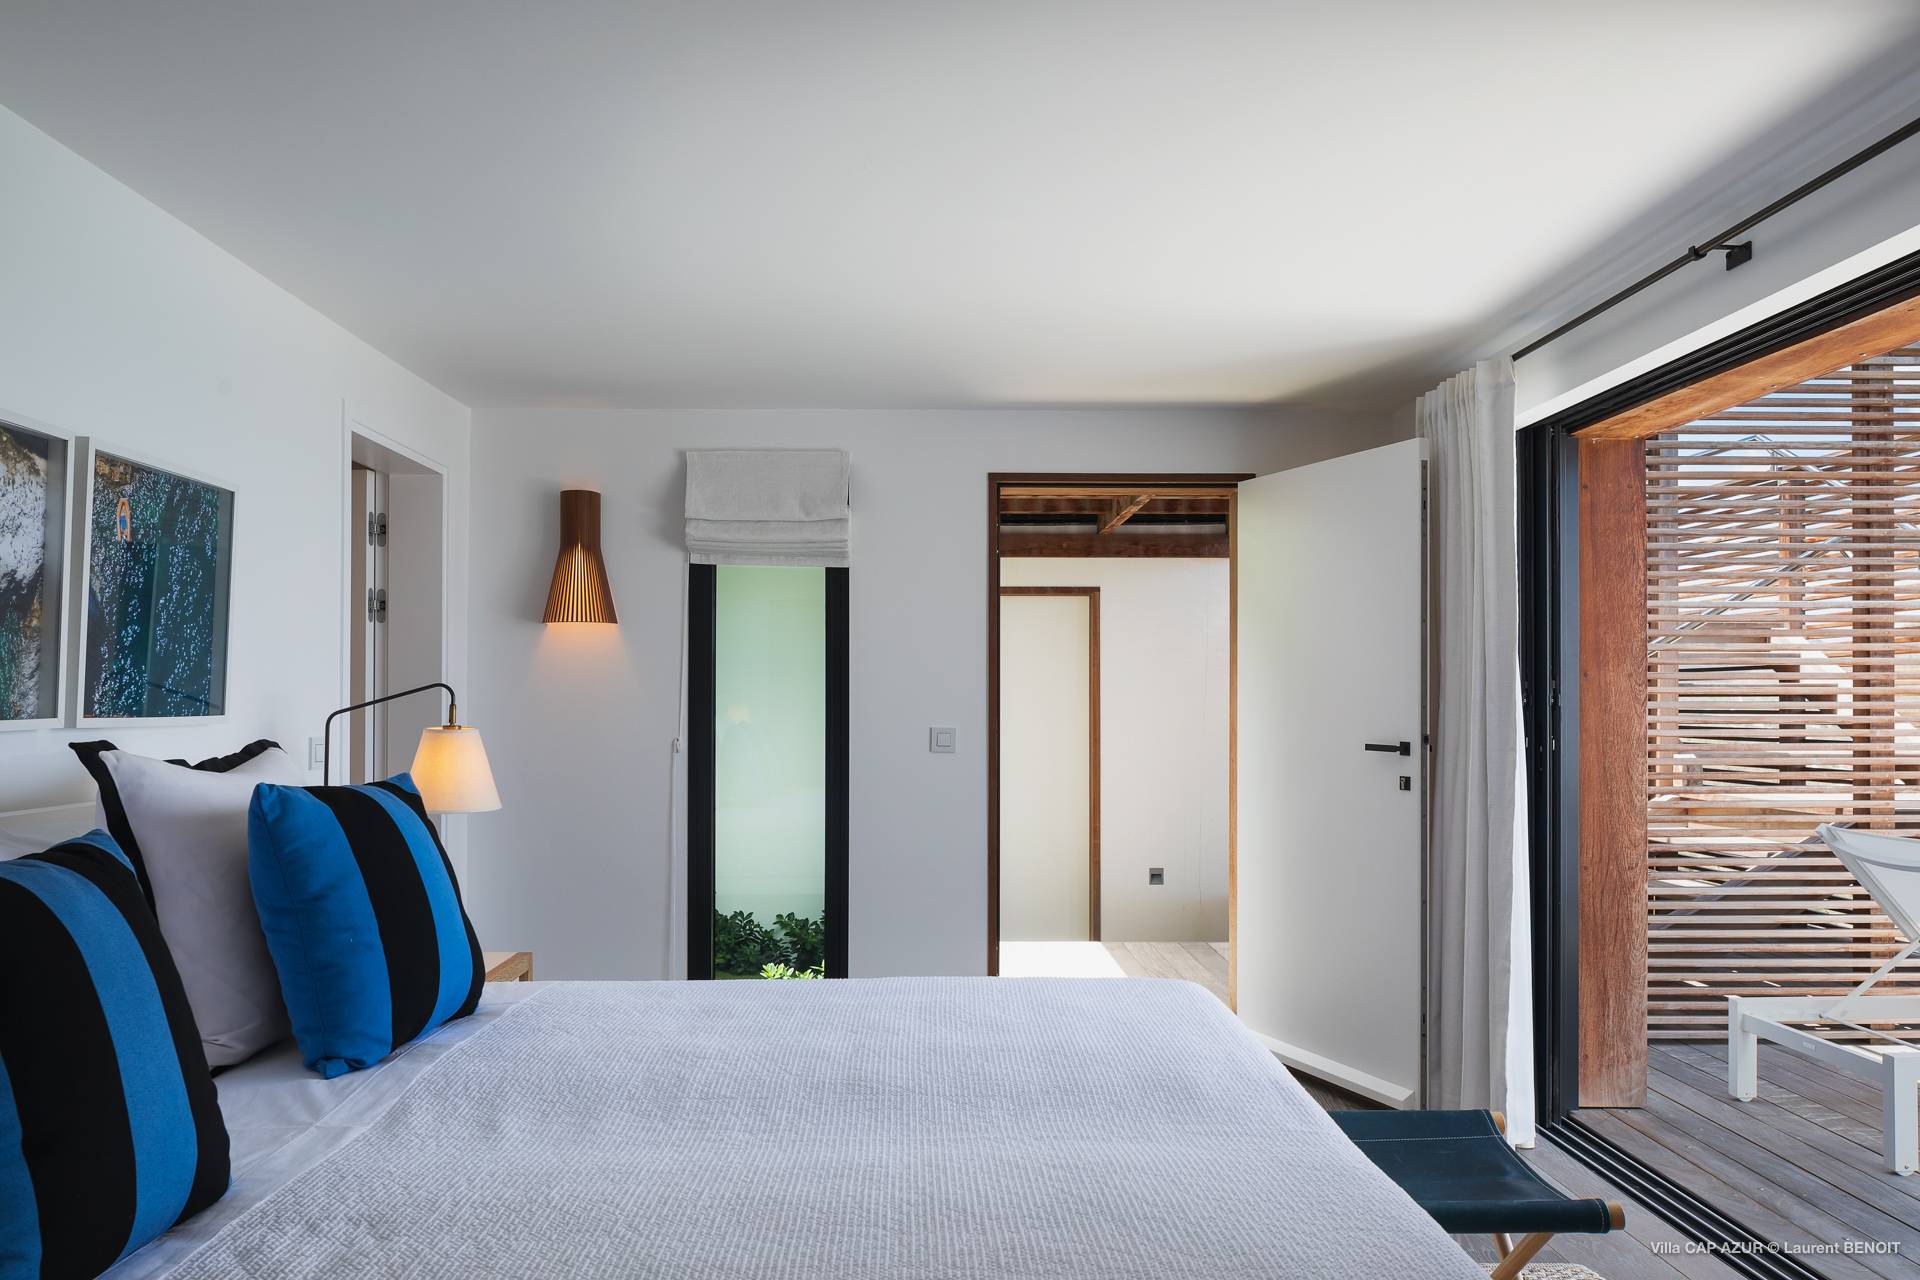 Villa Cap Azur Bedroom 4